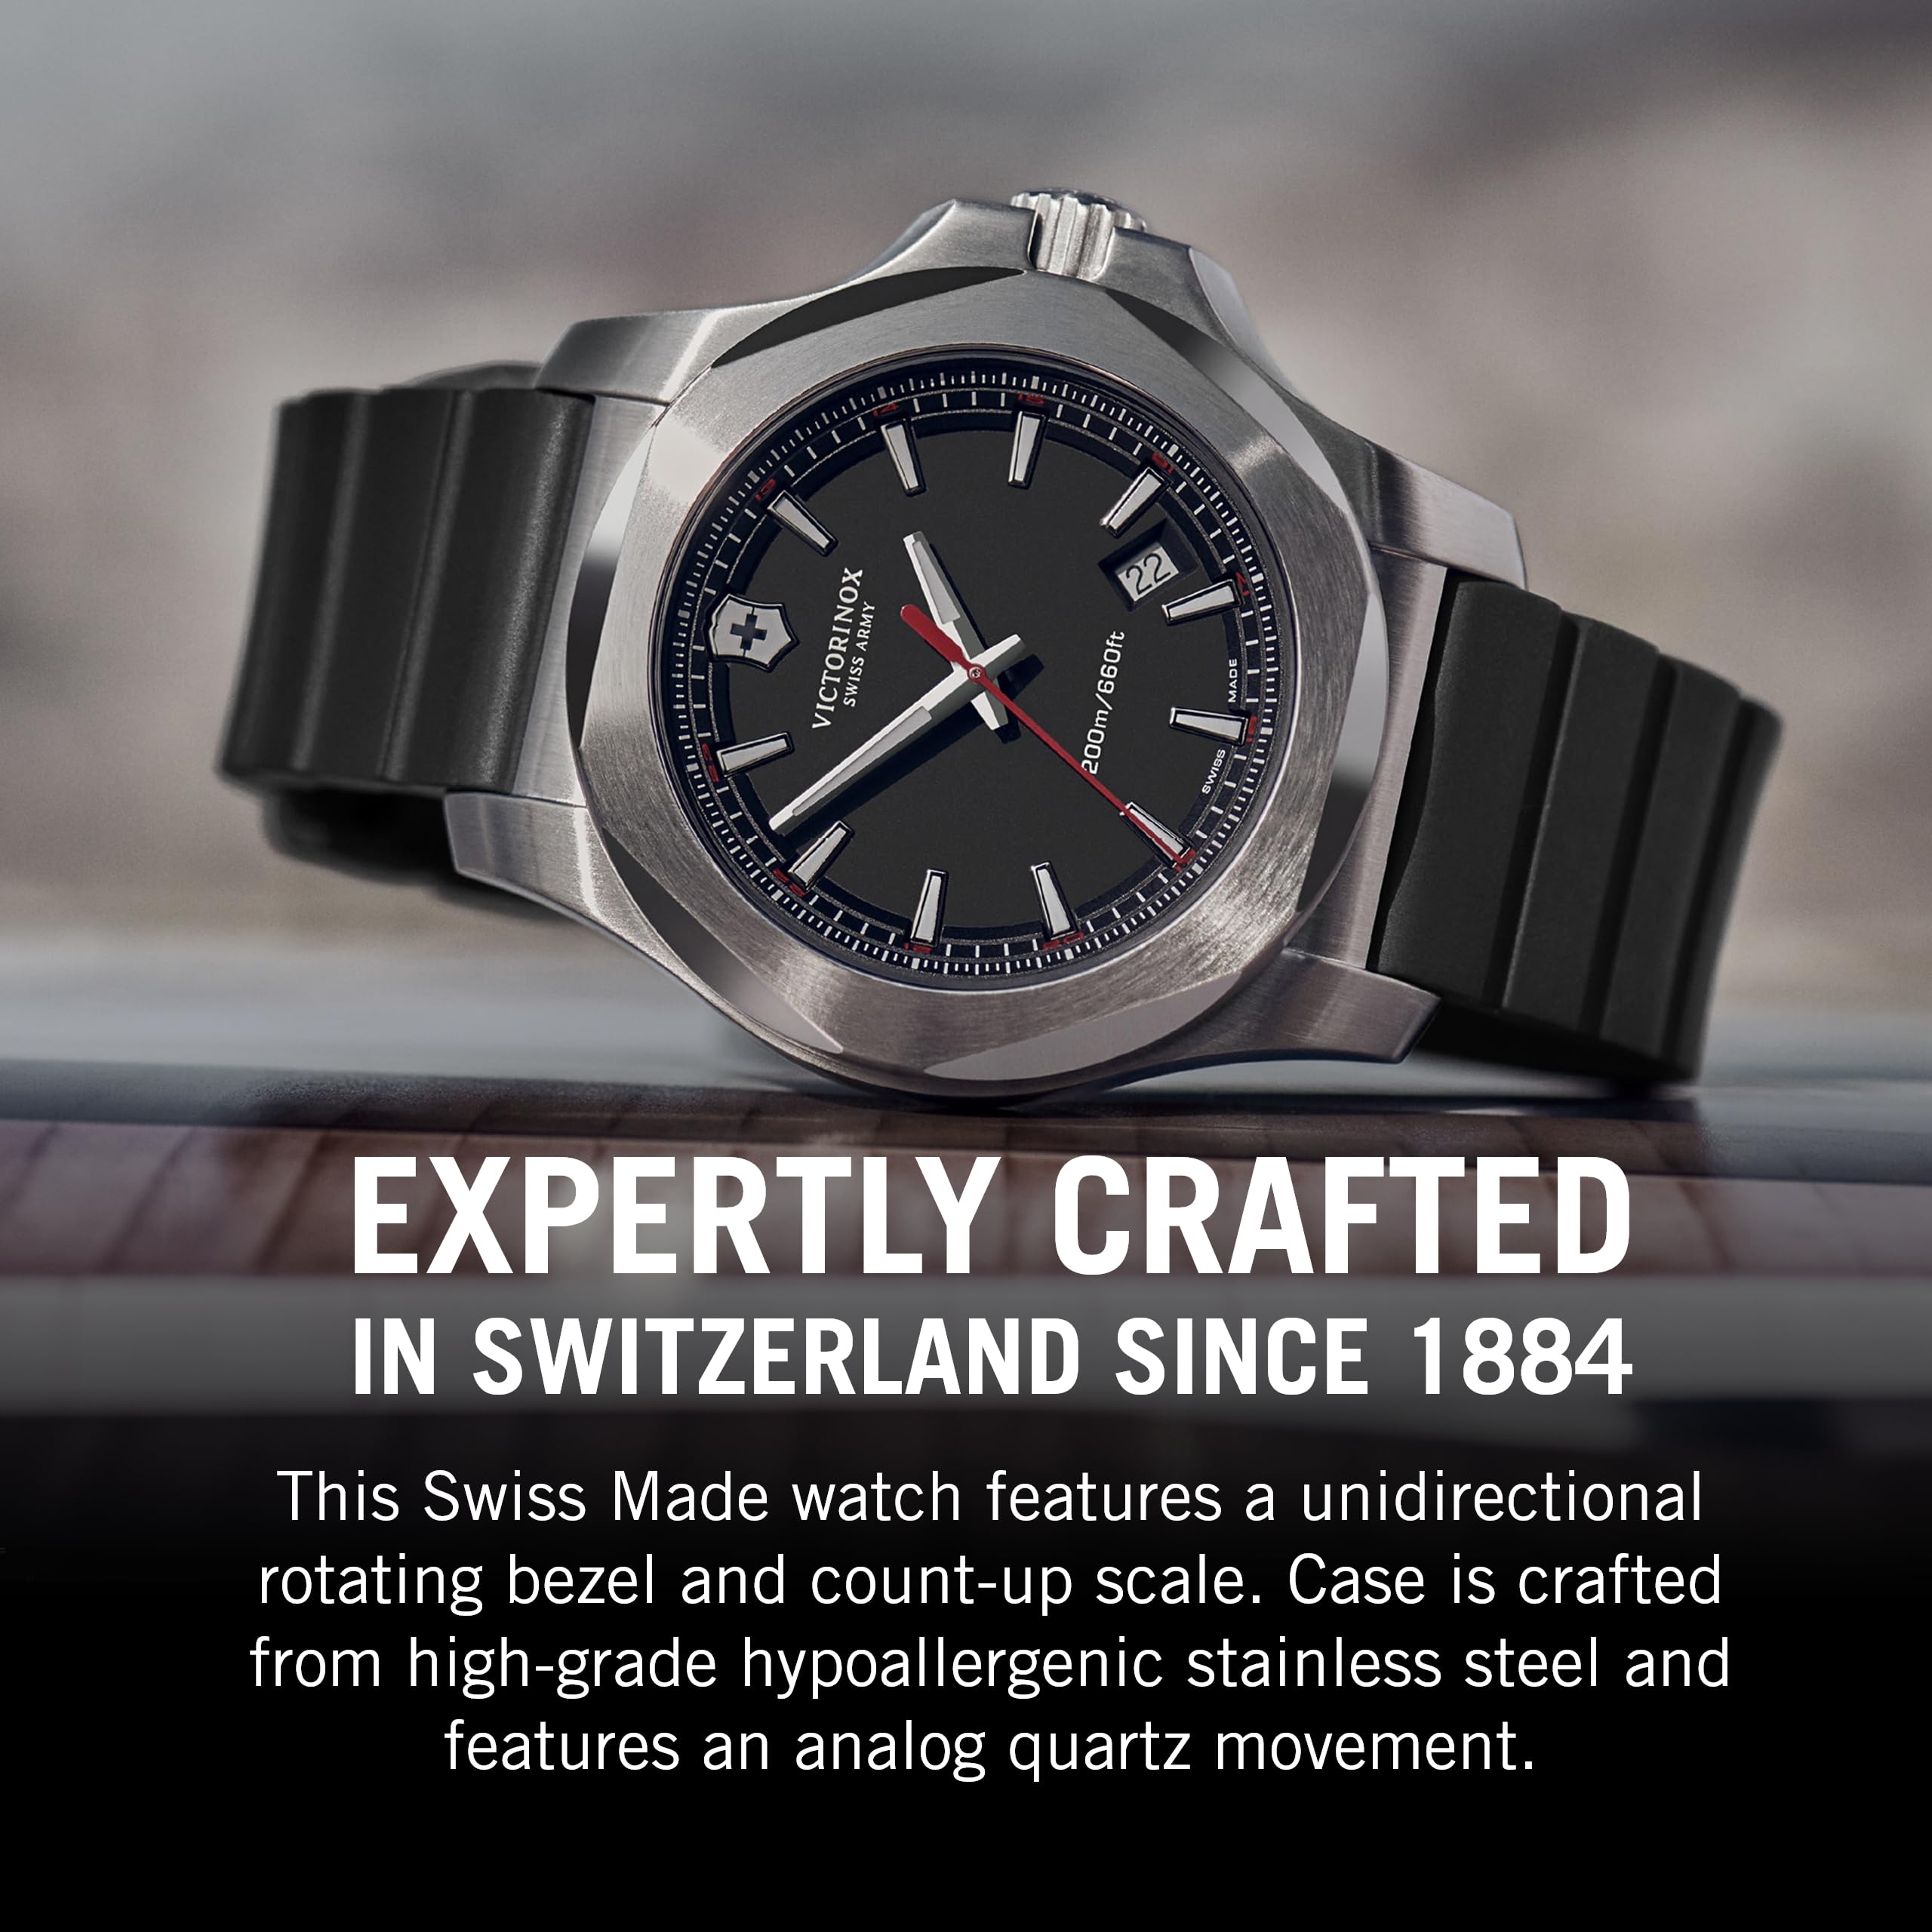 Victorinox Alliance I.N.O.X. Analog Quartz Watch - Timeless Wristwatch